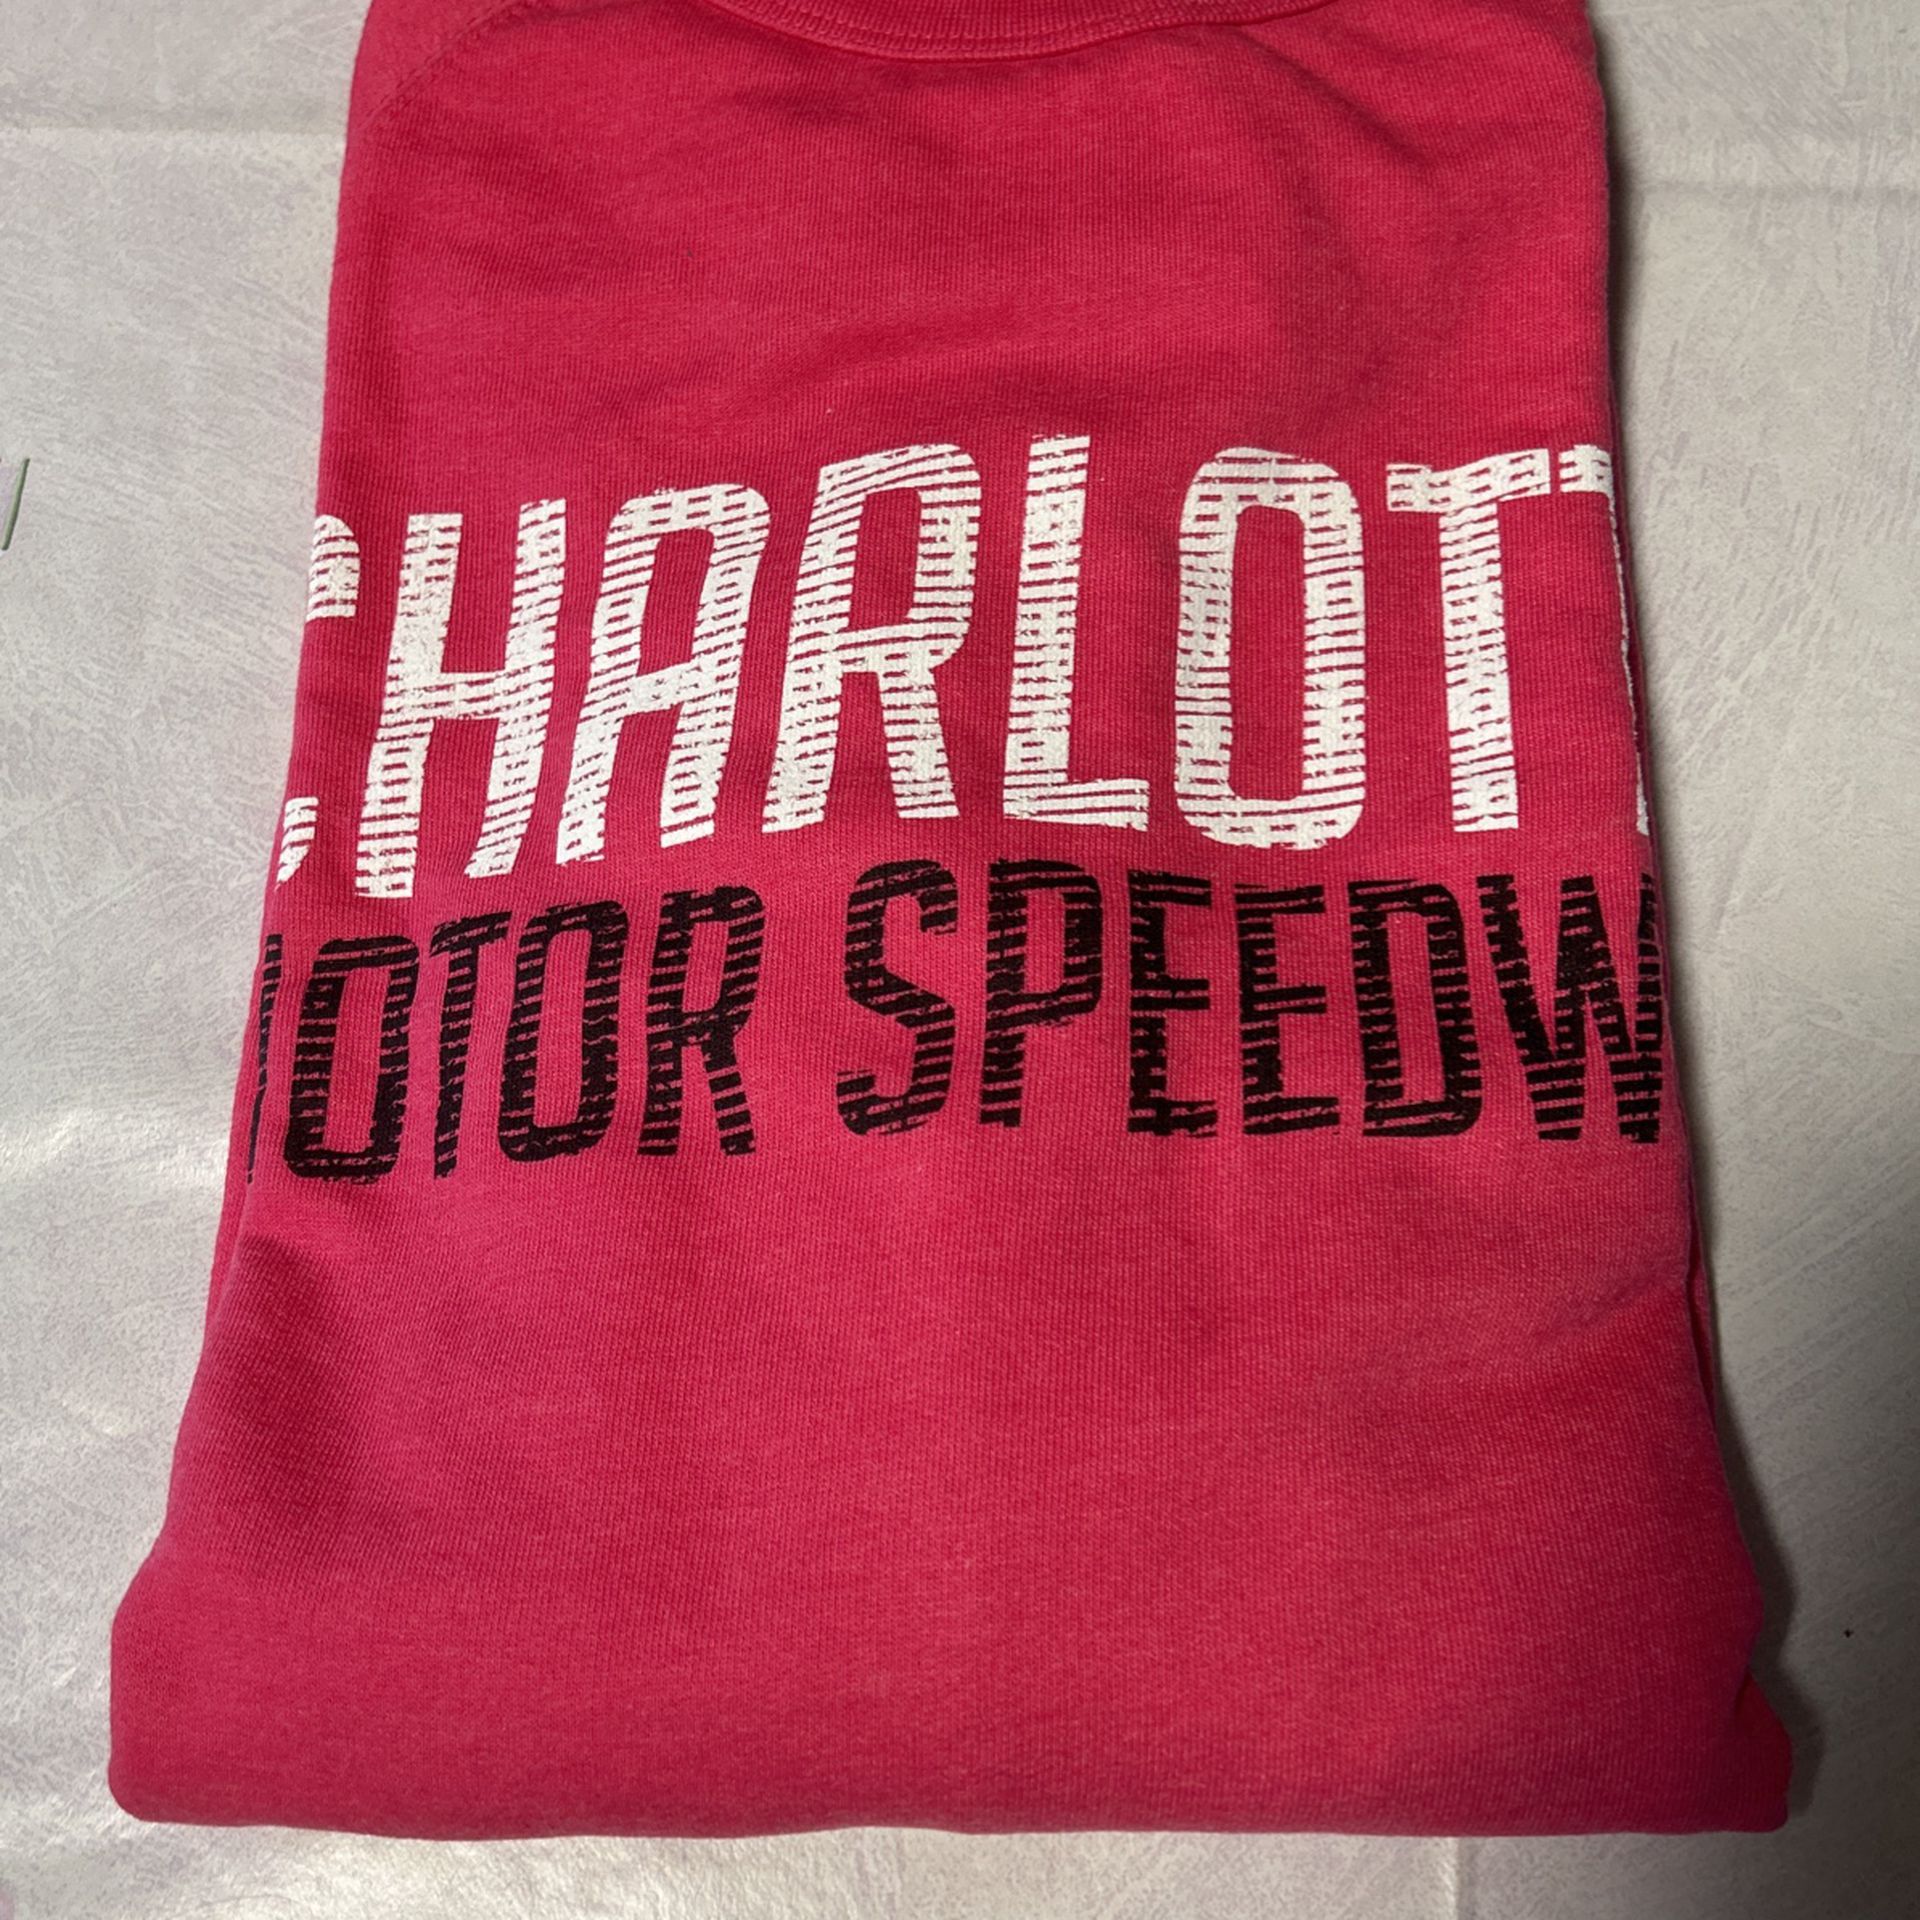 Charlotte Motor Speedway Pink Lightweight Sweatshirt